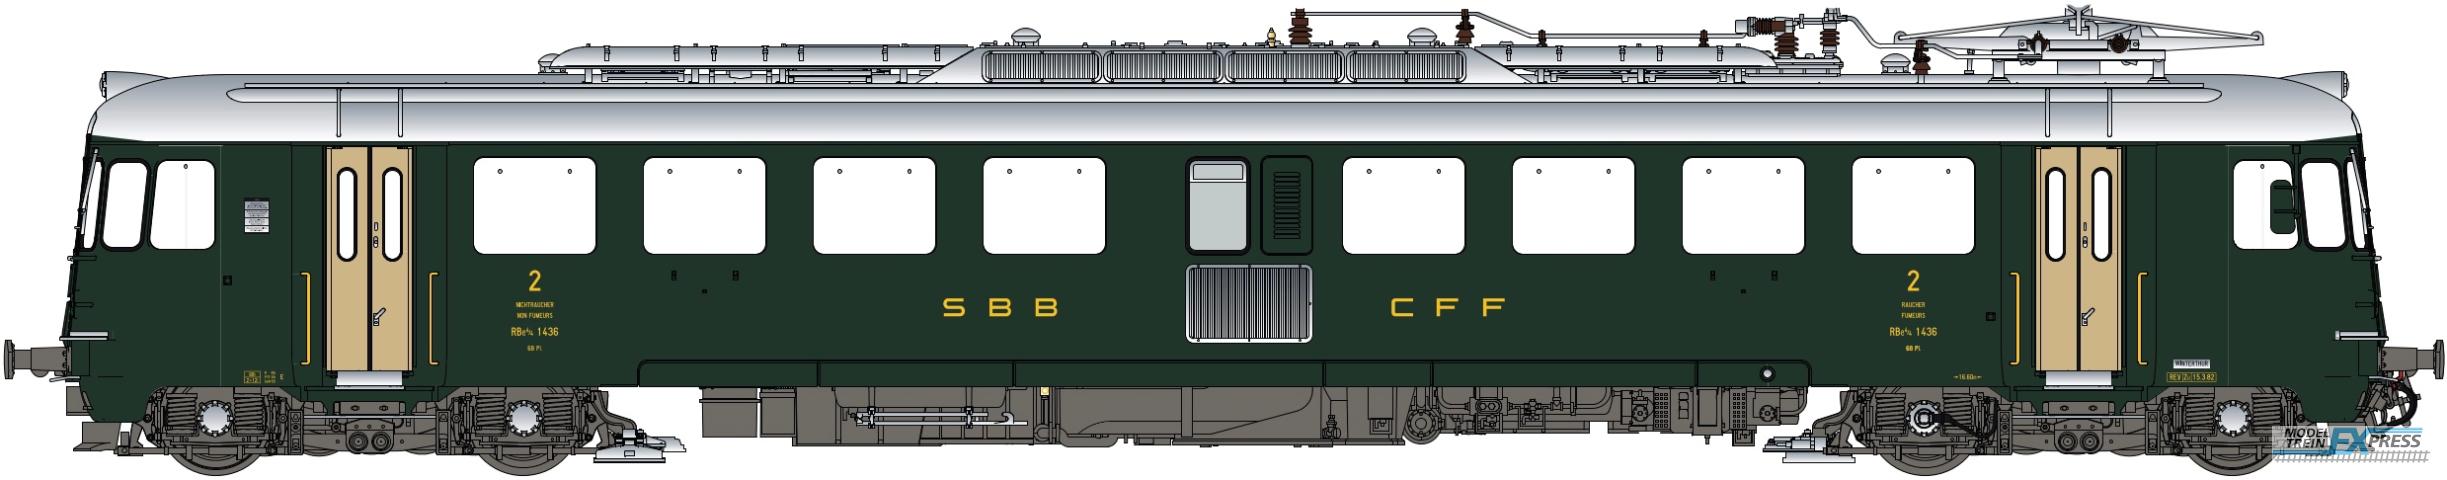 LS Models 17051S RBe 4/4, 1436, groen, goudkleurige deuren, oude opschriften  /  Ep. IVb  /  SBB  /  HO  /  DC SOUND  /  1 P.